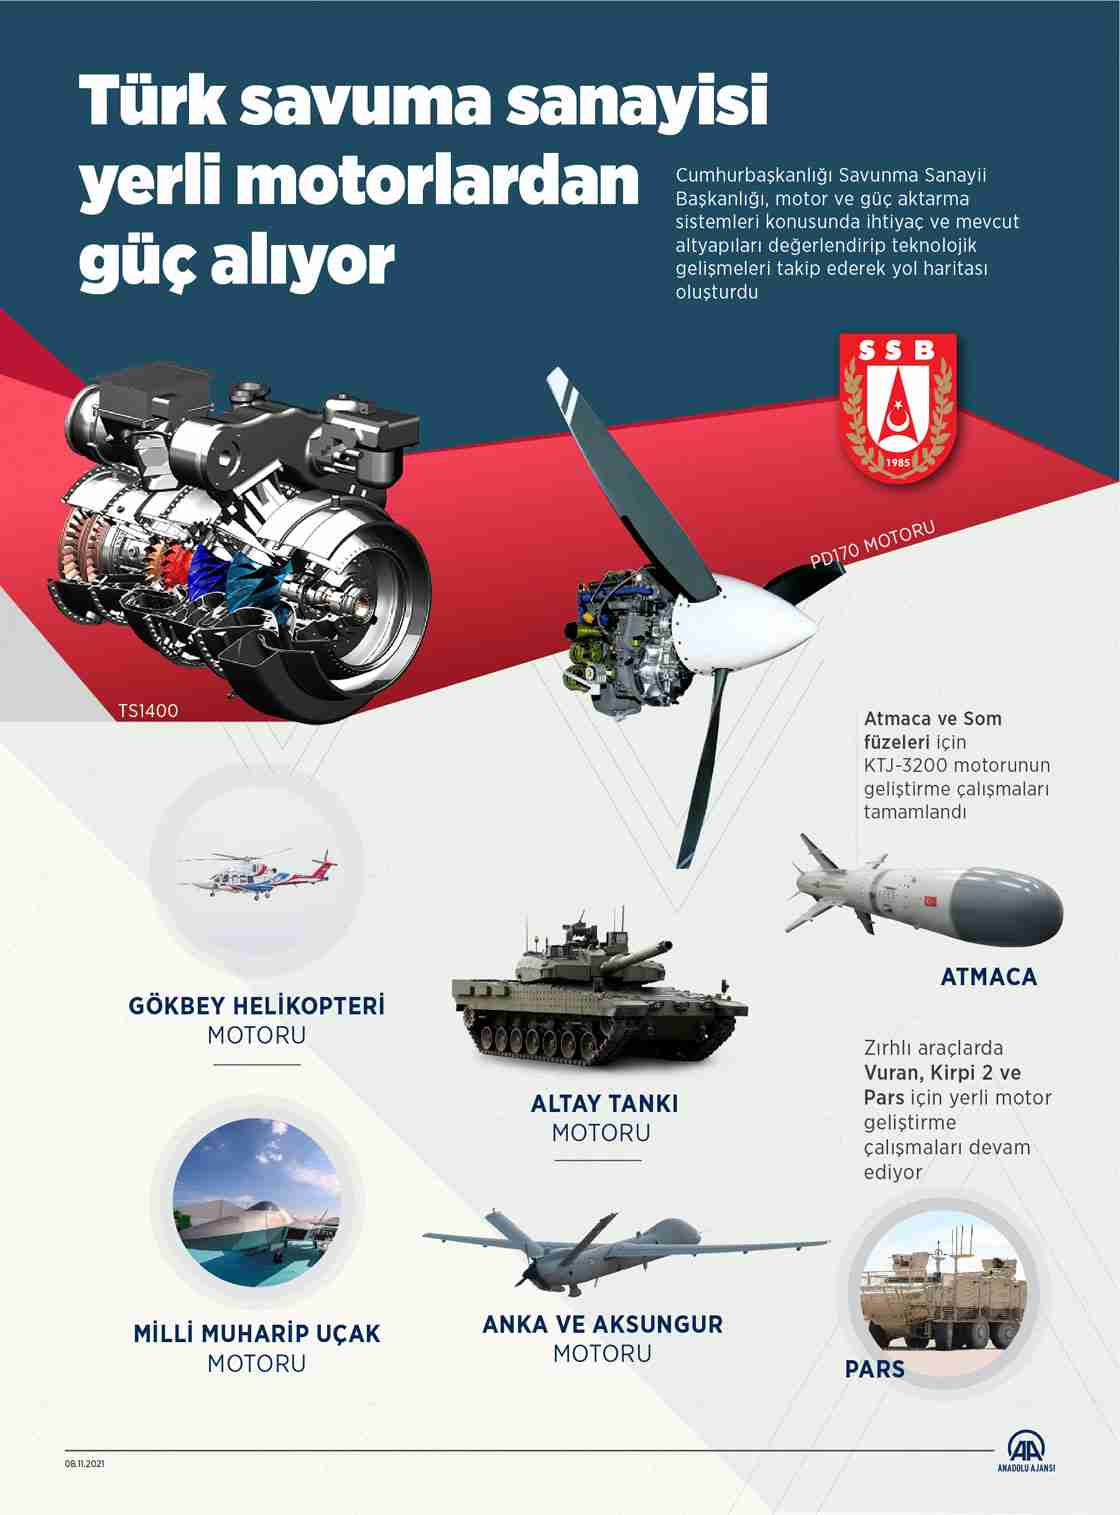 Türk savuma sanayii yerli motorları hazırlıyor